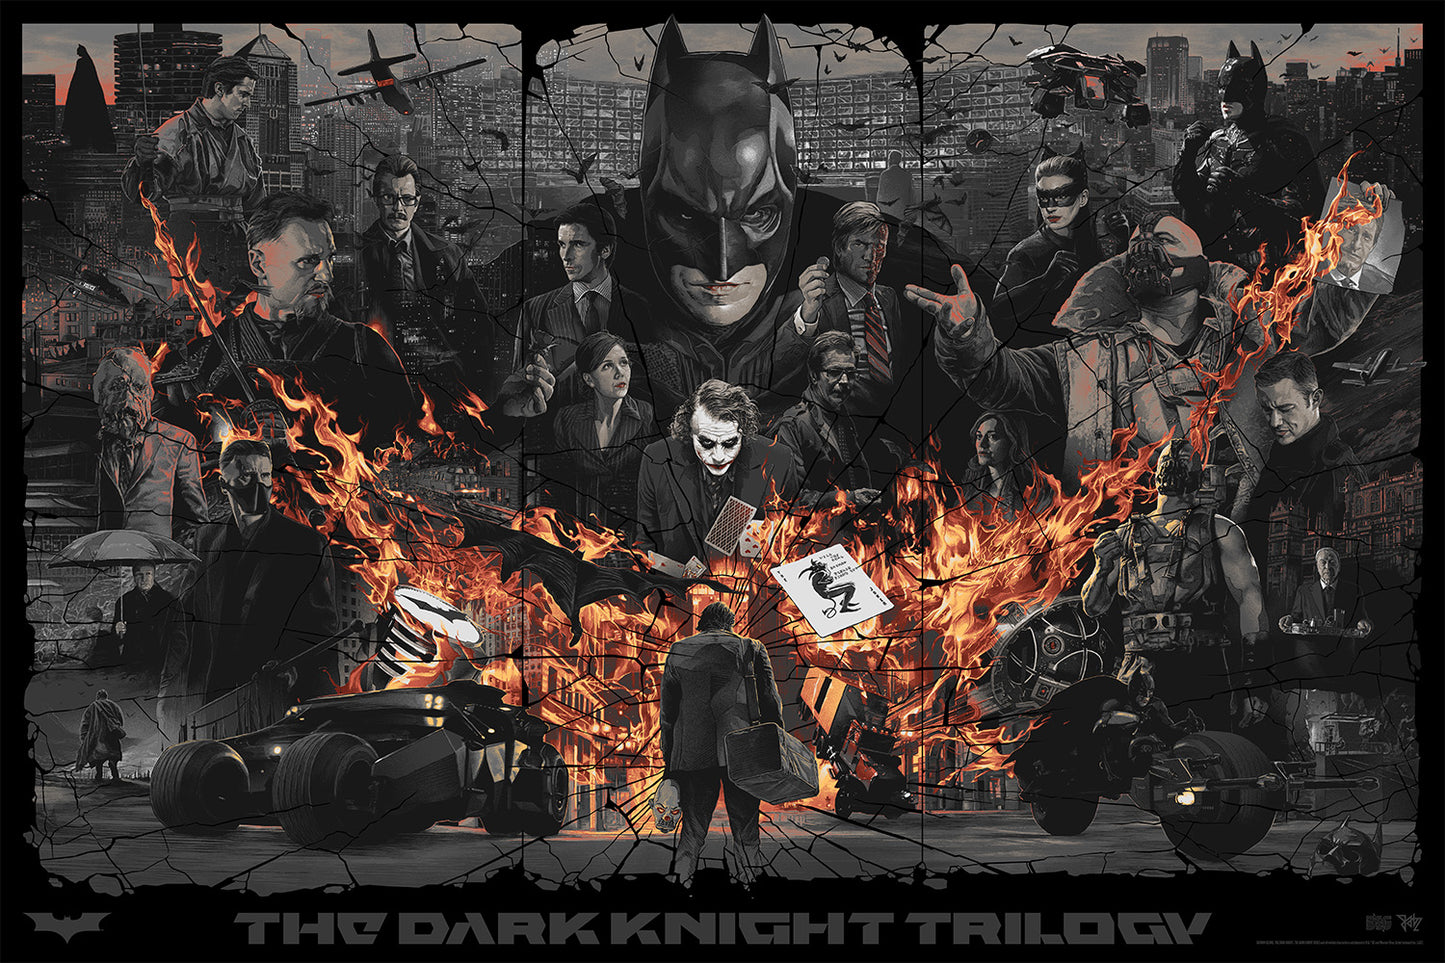 Gabz "The Dark Knight Trilogy (The Darkest Night)" Variant